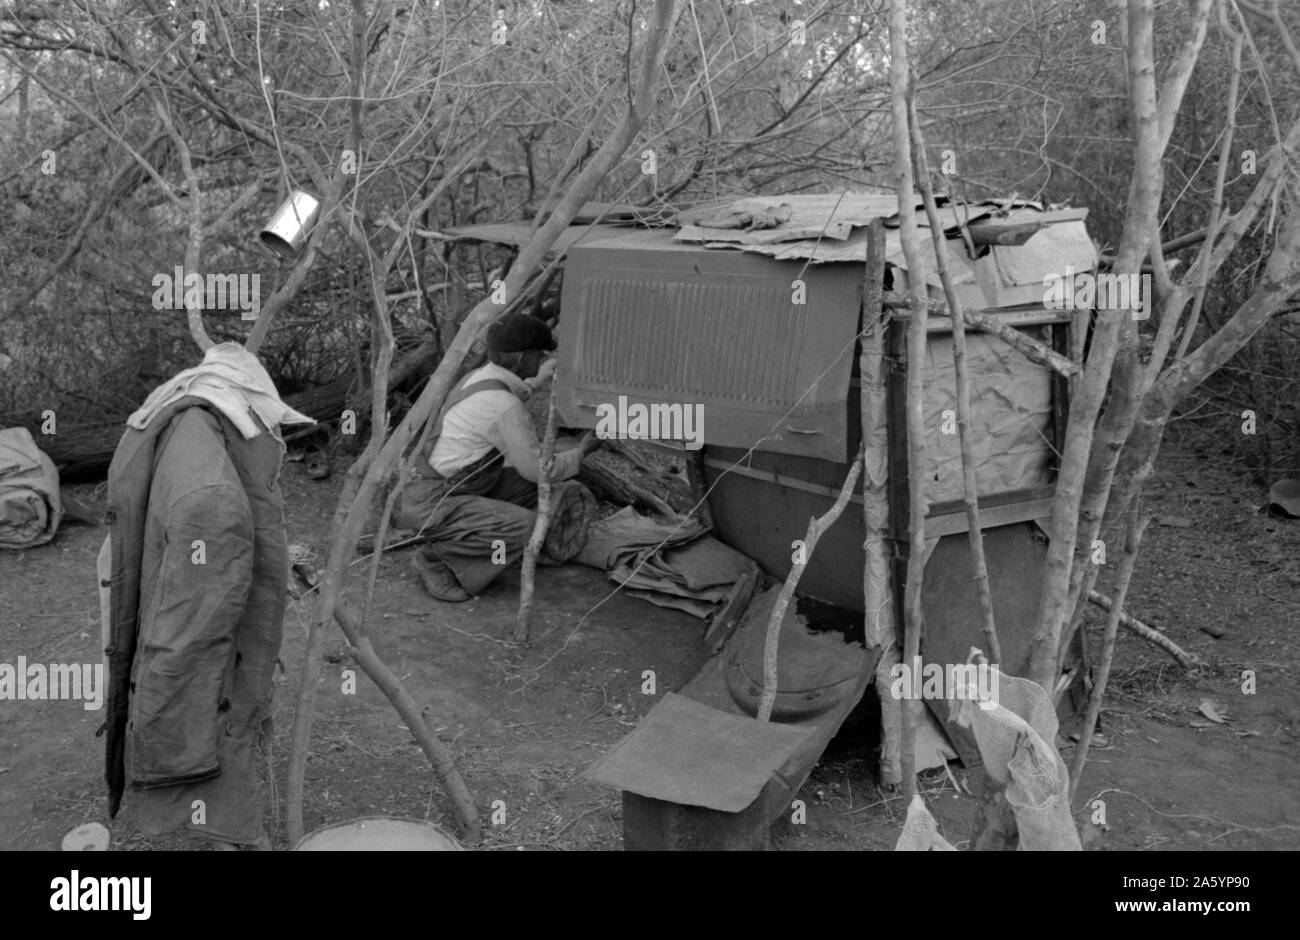 Weiße Wanderarbeiter leben in Lager mit zwei anderen Männern, die auf mageren, welches seine schlafende zu vierteln. In der Nähe von Harlingen, Texas von Russell Lee, 1903-1986, vom 19390101. Stockfoto